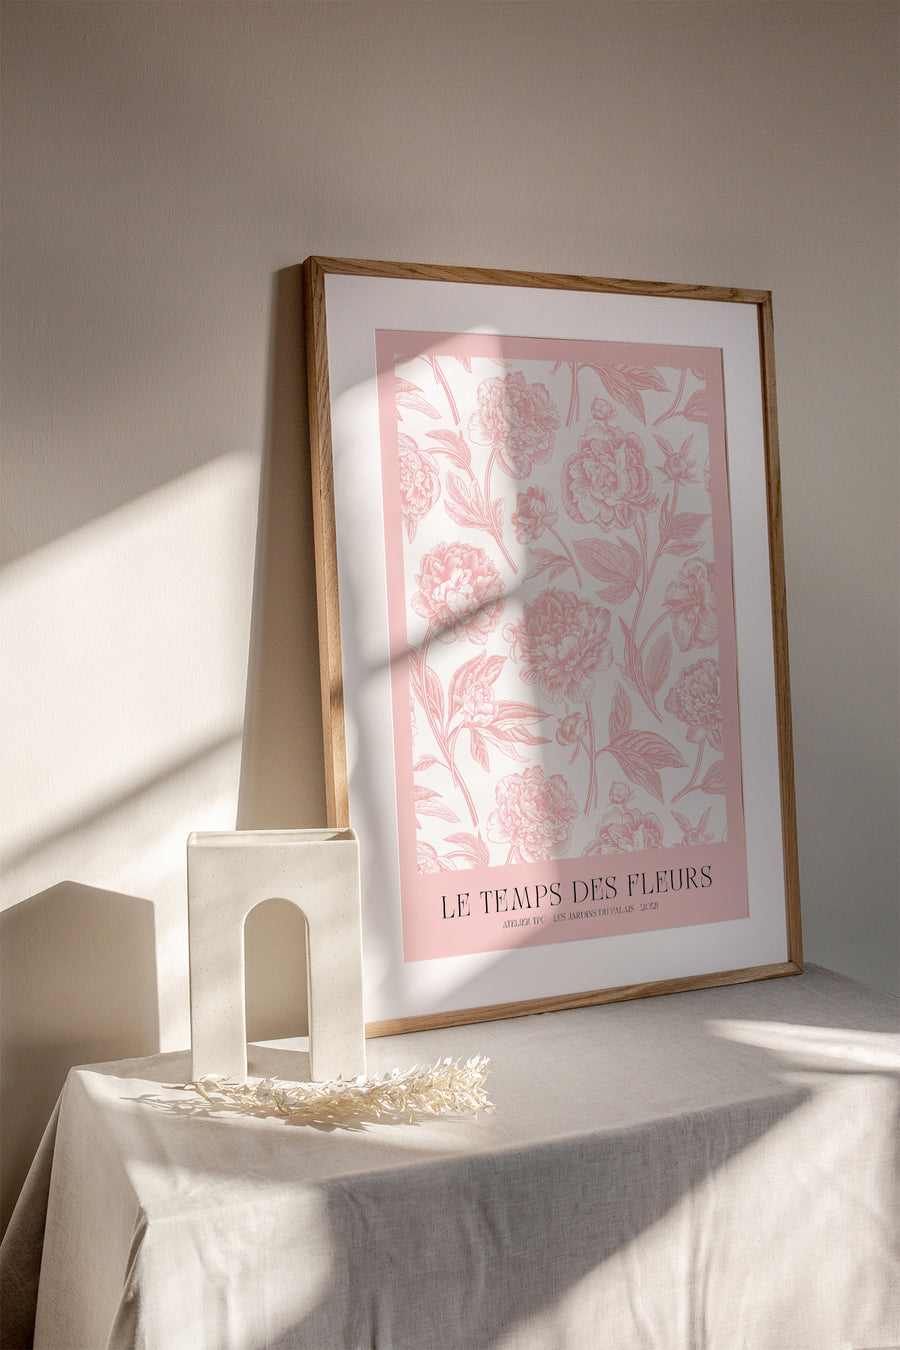 Pink peonies flower art print